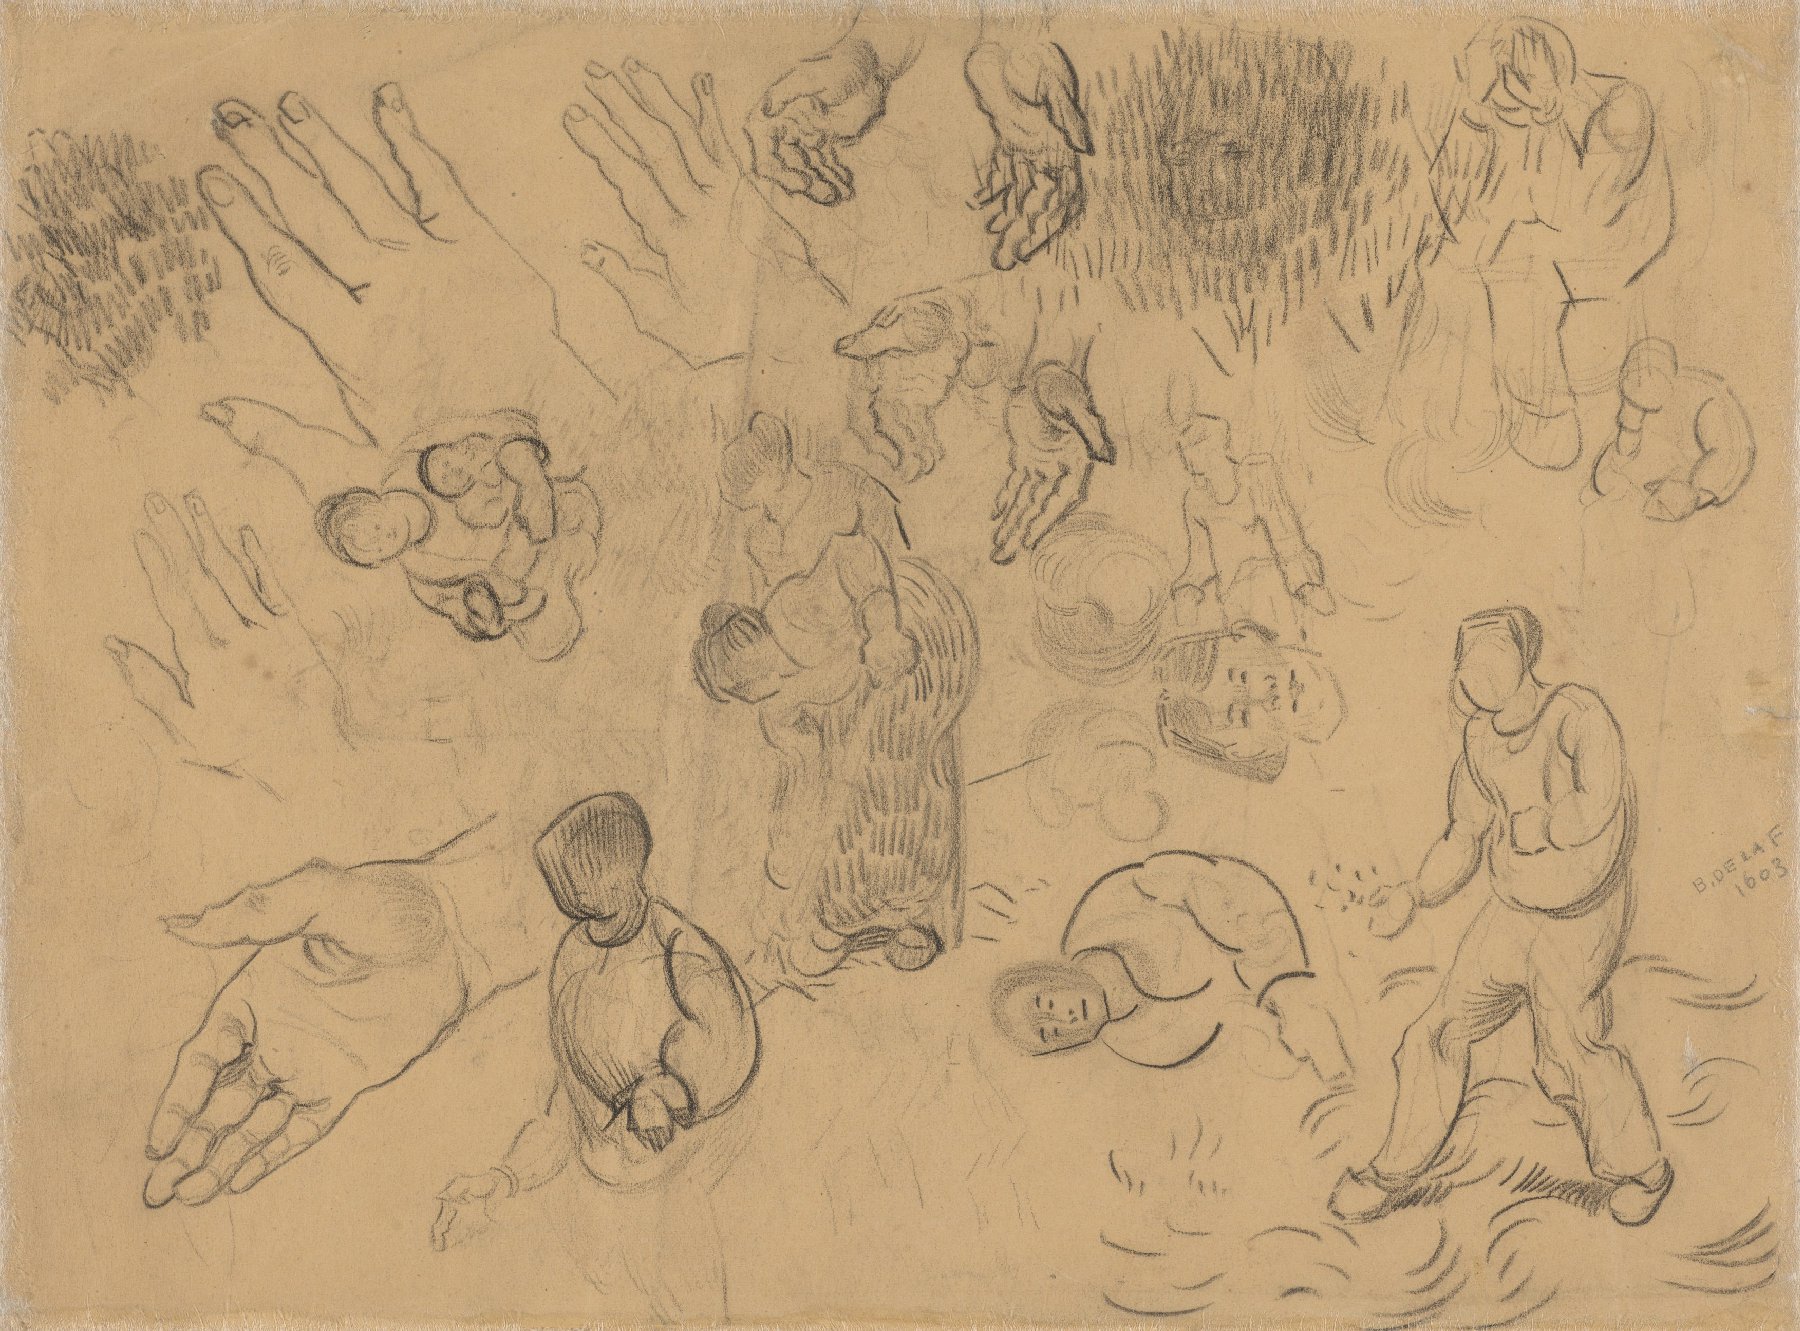 Schetsen van figuren en studies van een hand Vincent van Gogh (1853 - 1890), Saint-Rémy-de-Provence, maart-april 1890